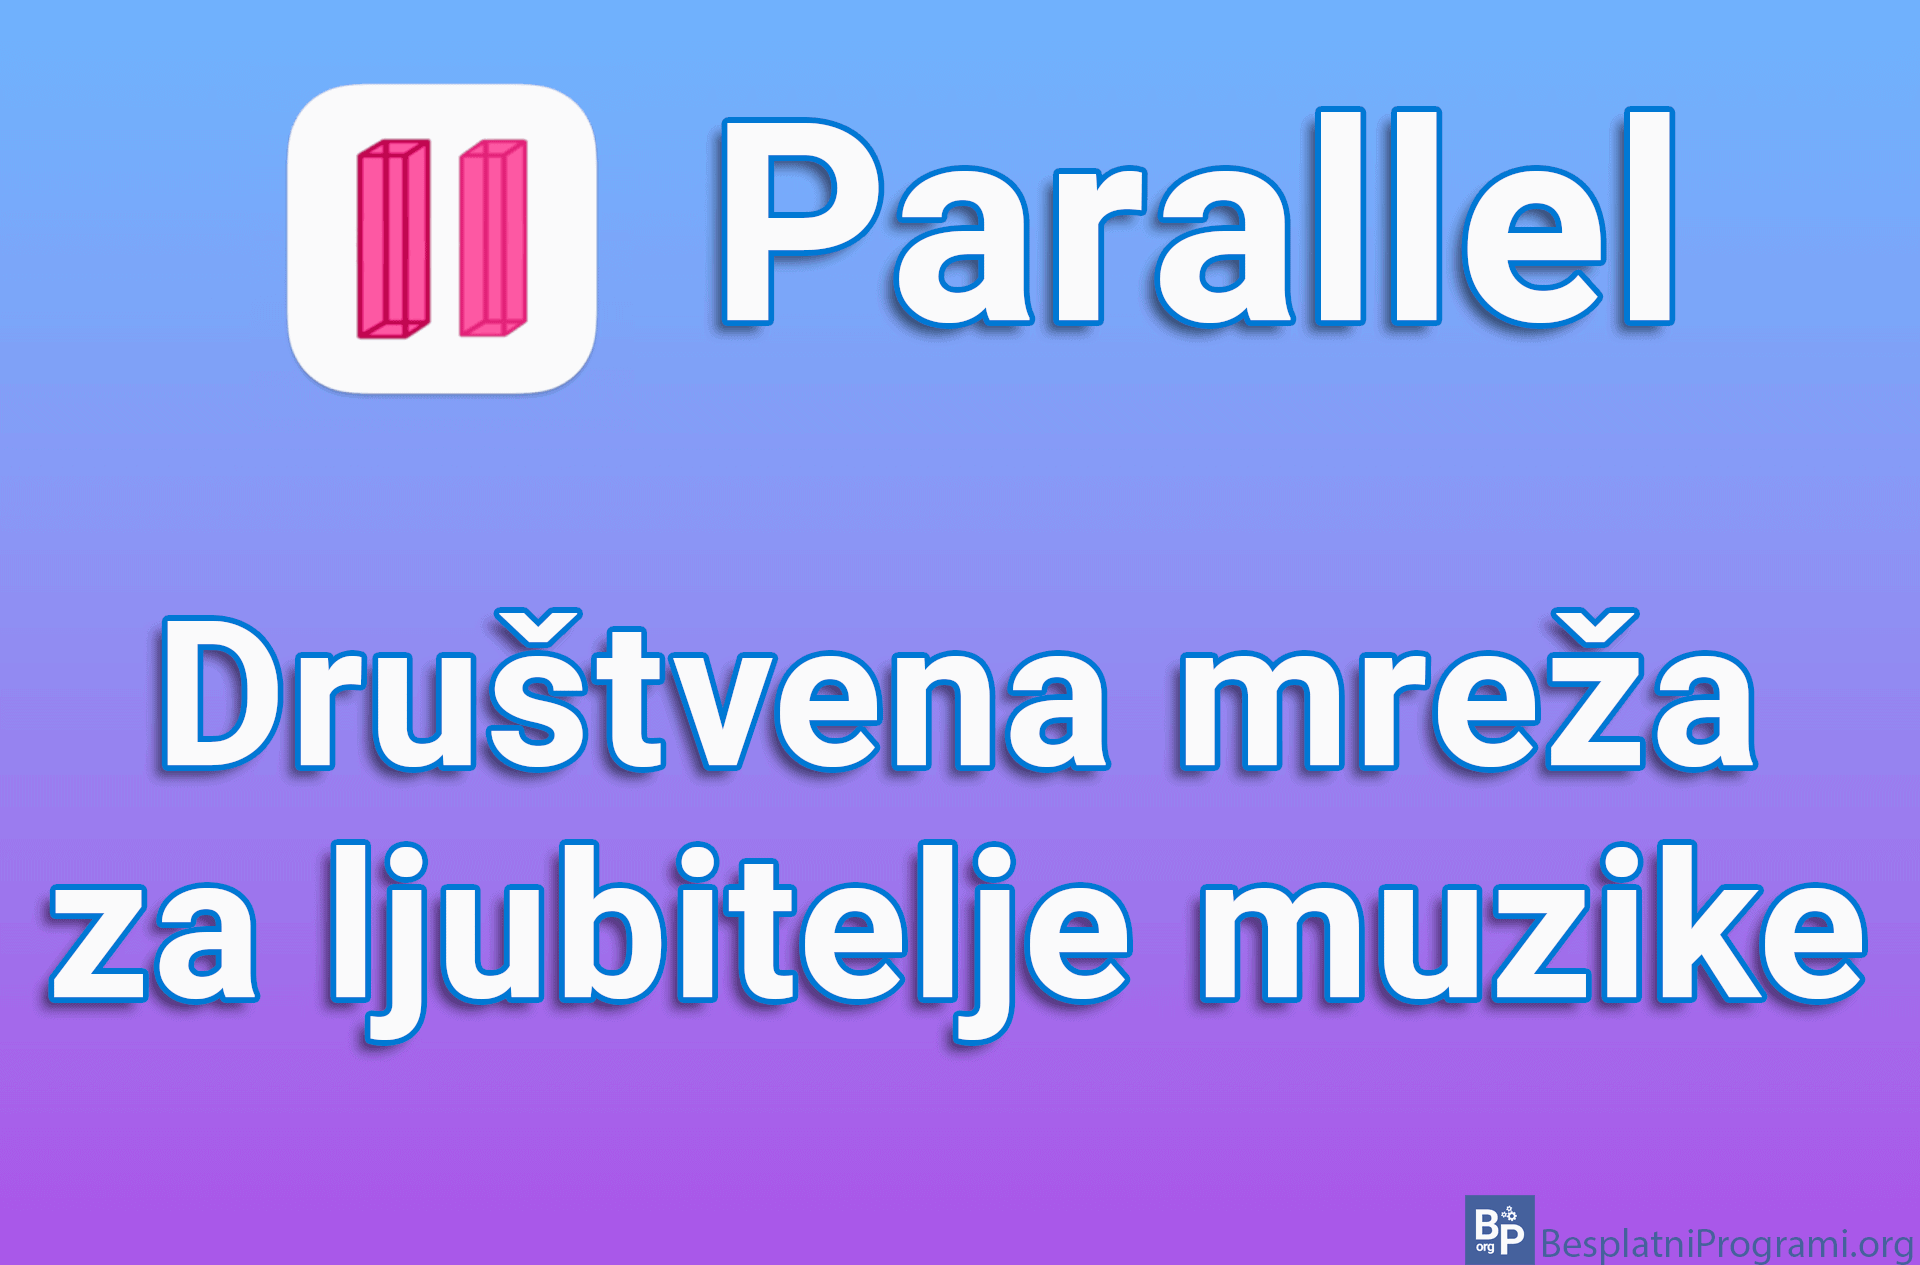 Parallel – Društvena mreža za ljubitelje muzike